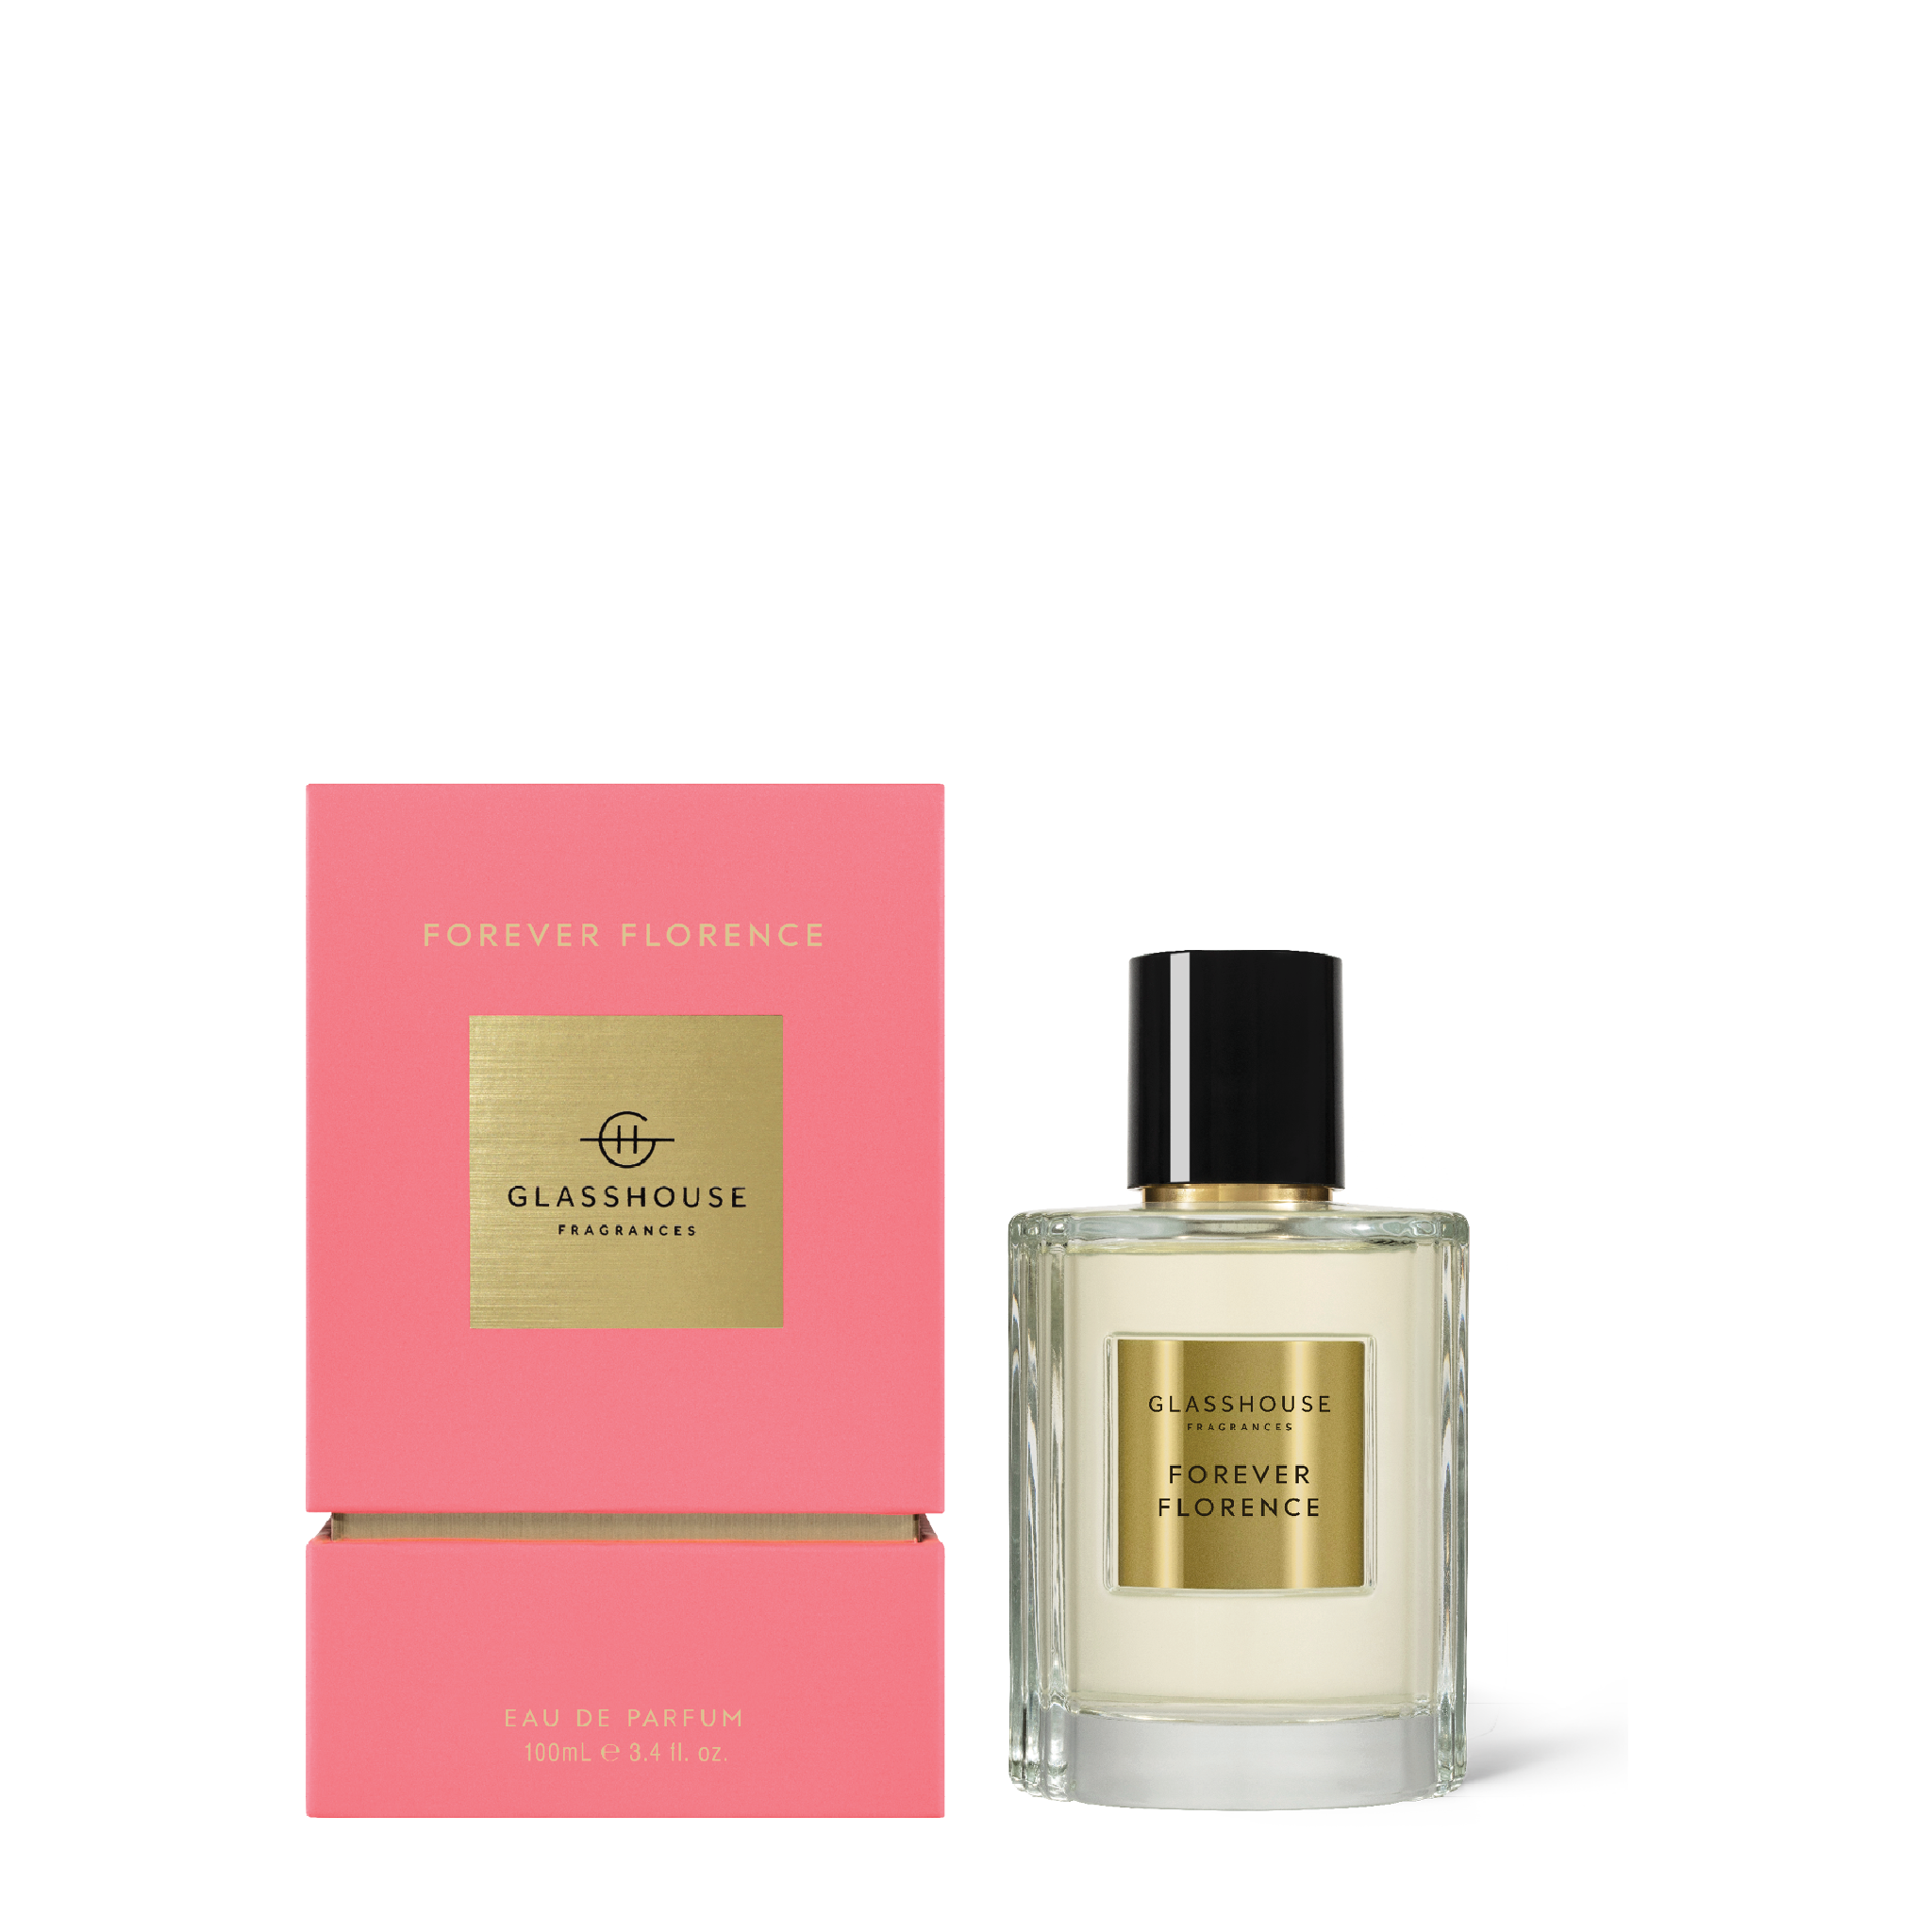 Forever Florence - 100mL Eau de Parfum | Glasshouse Fragrances